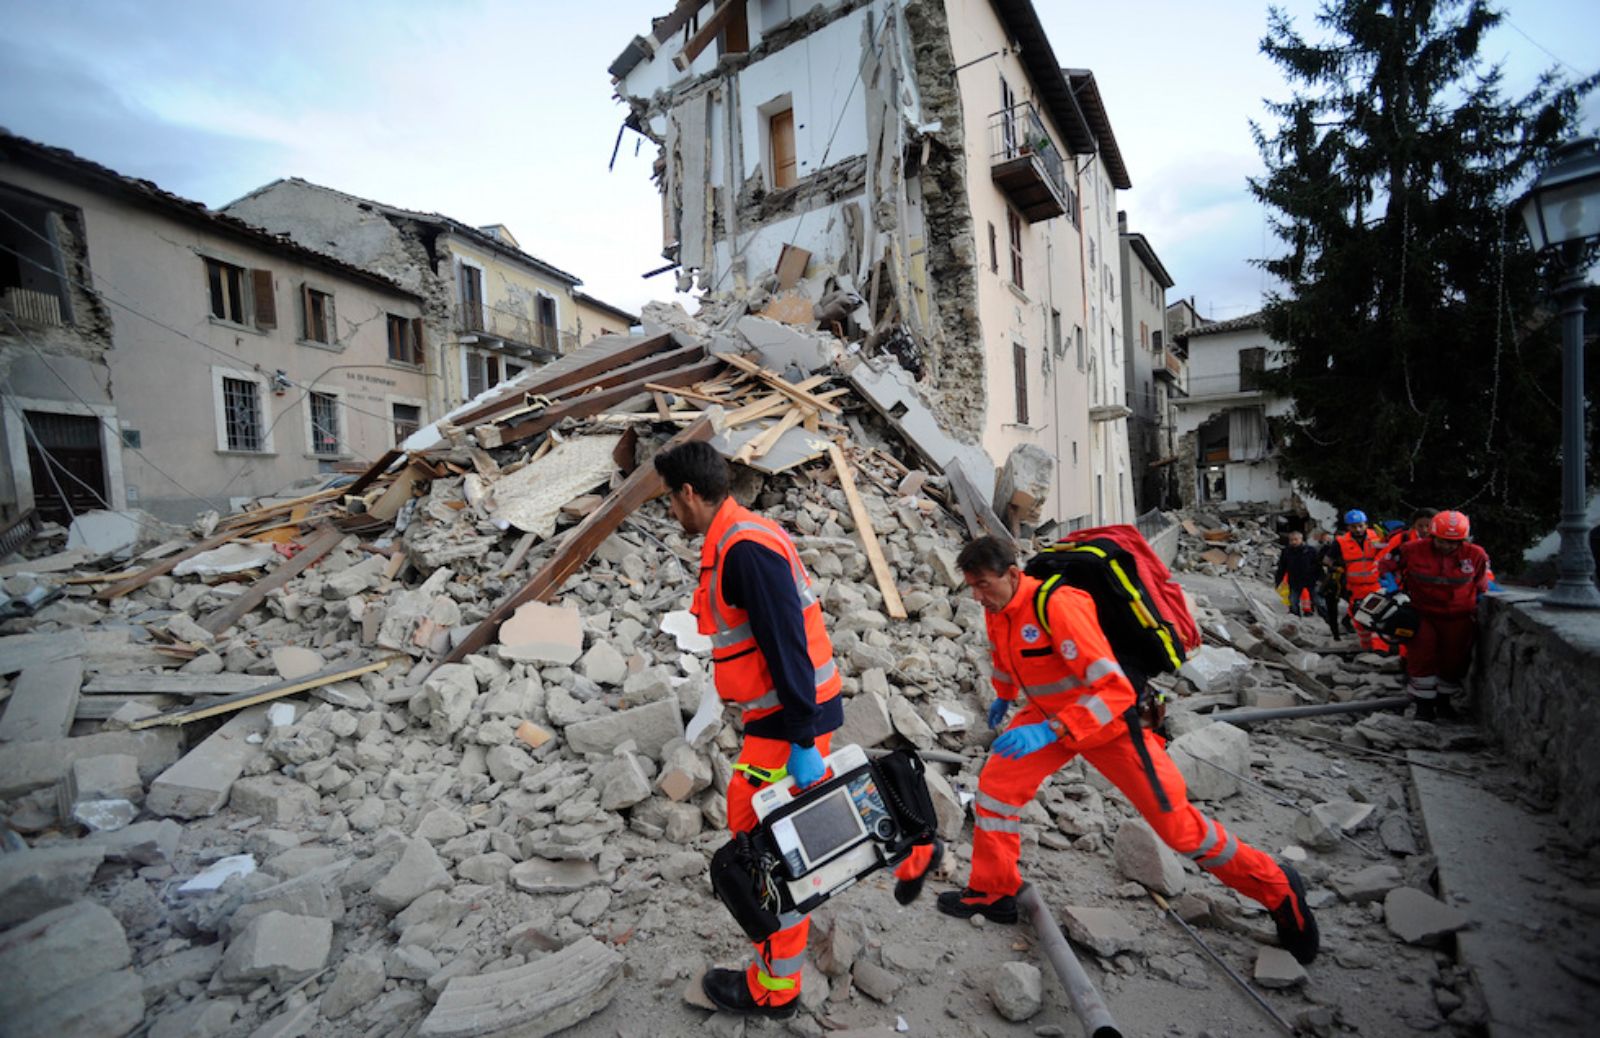 Terremoto in centro Italia: ecco come donare per aiutare le popolazioni colpite